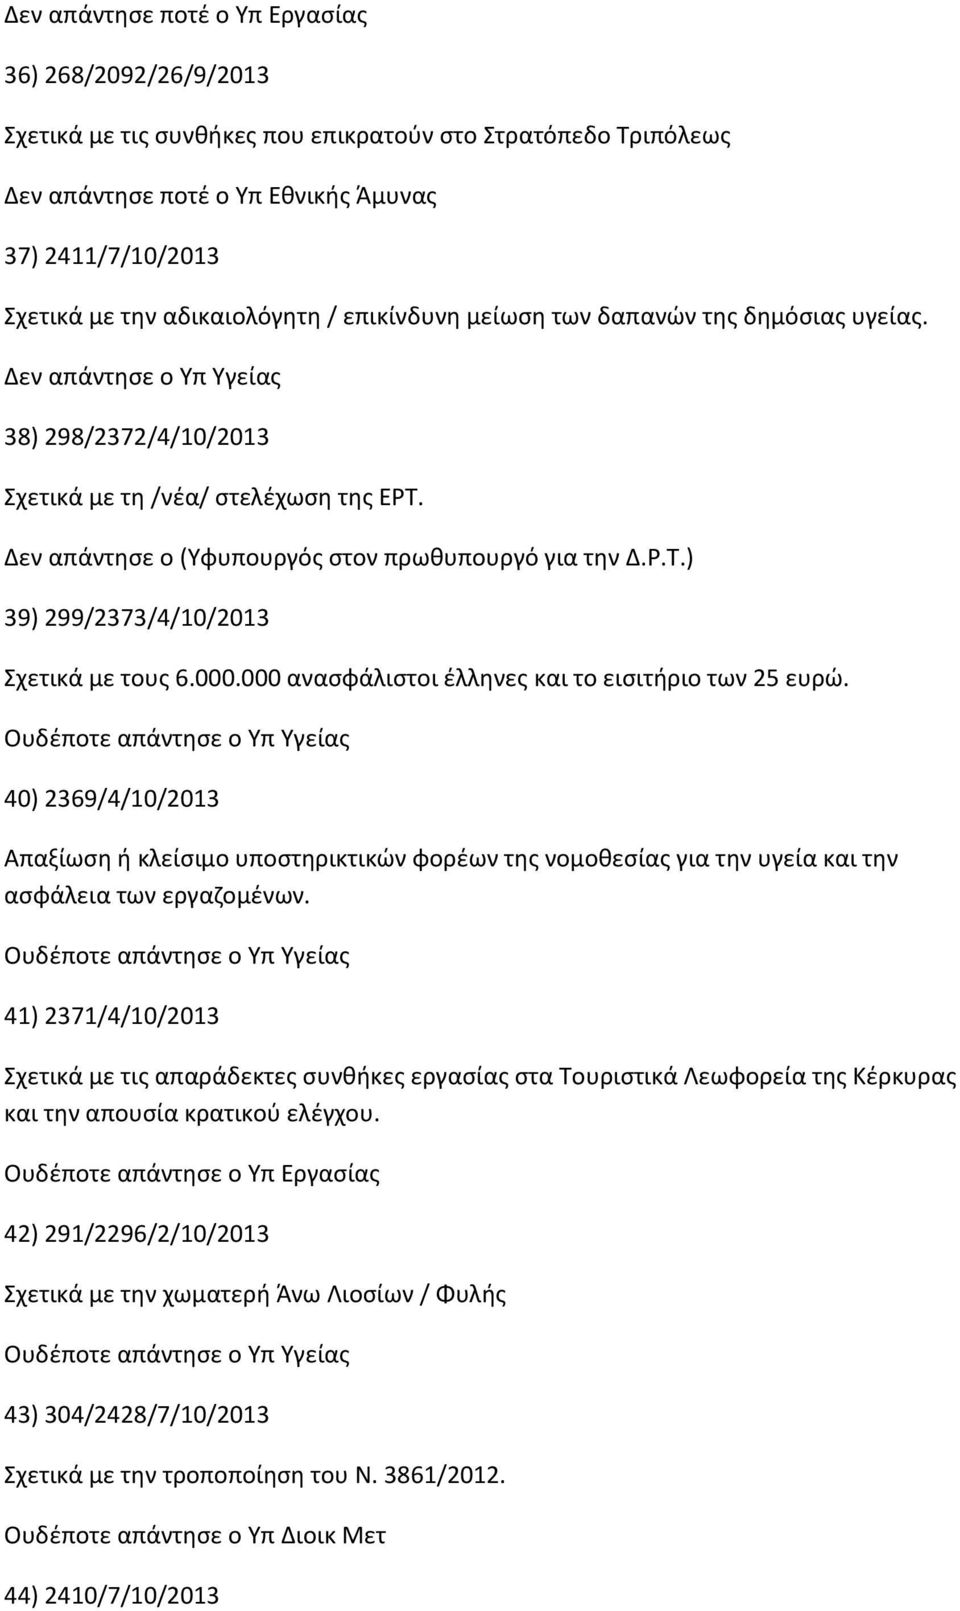 Δεν απάντησε ο (Υφυπουργός στον πρωθυπουργό για την Δ.Ρ.Τ.) 39) 299/2373/4/10/2013 Σχετικά με τους 6.000.000 ανασφάλιστοι έλληνες και το εισιτήριο των 25 ευρώ.